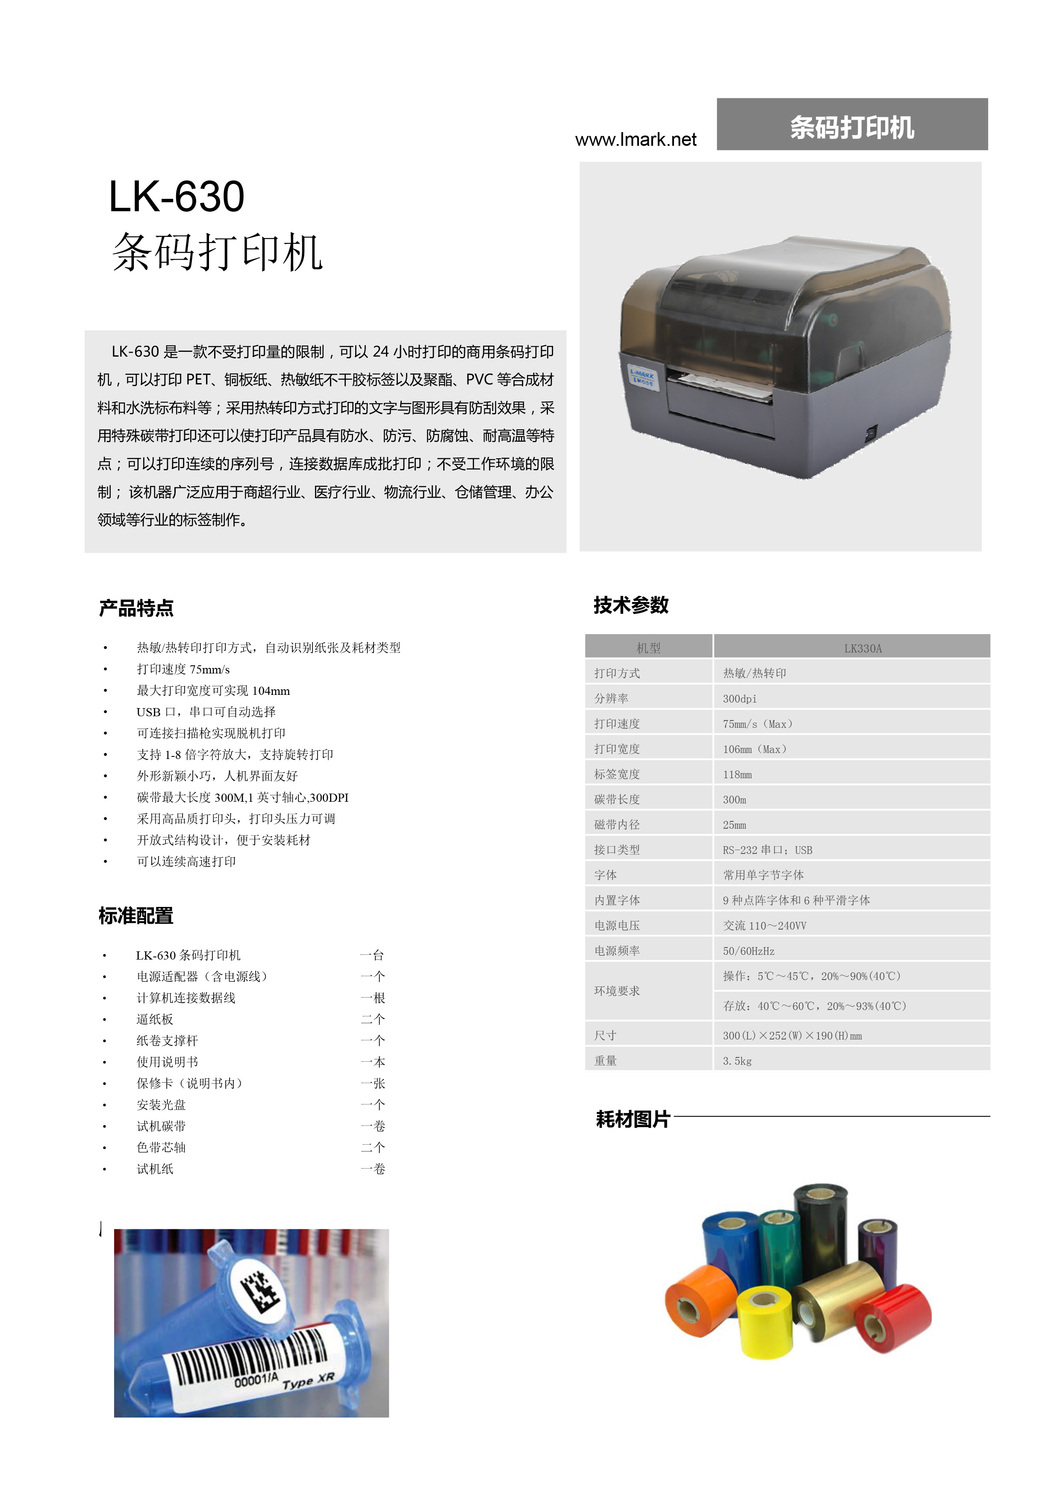 產品技術手冊-設備-LK630.jpg